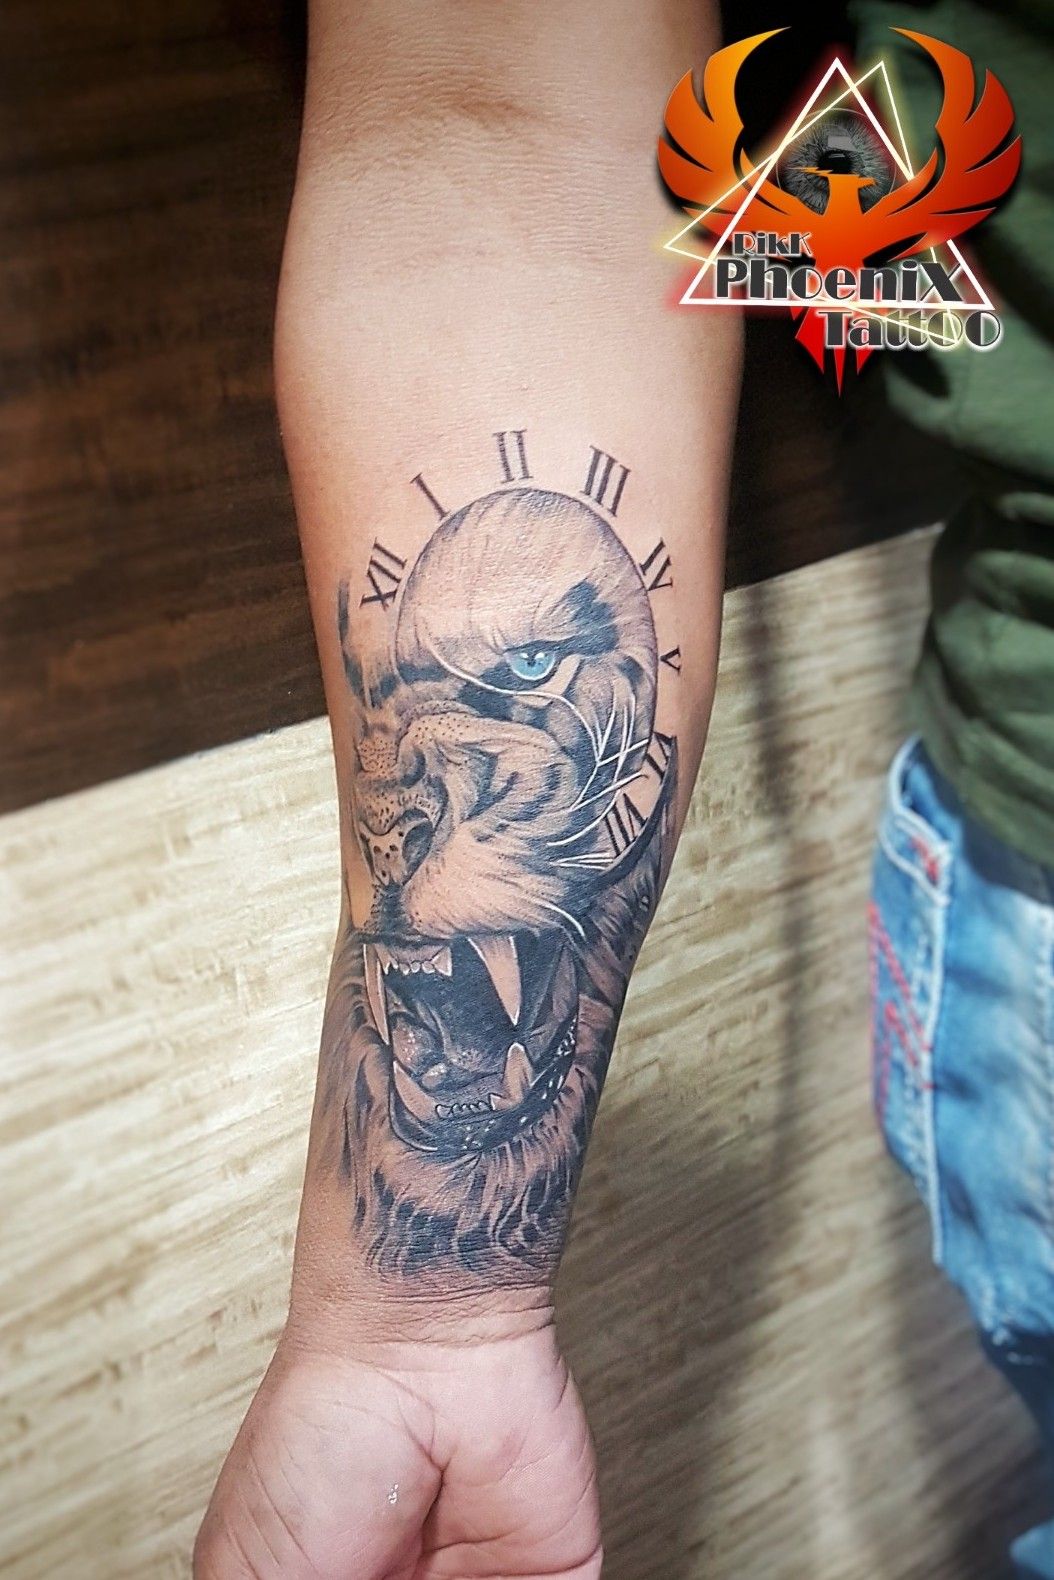 🌾 ਪੰਜਾਬ ਦਾ ਸੱਭਿਆਚਾਰ #punjab #🌾 ਪੰਜਾਬ ਦਾ ਸੱਭਿਆਚਾਰ #☬ ਪੰਜਾਬ, ਪੰਜਾਬੀ ਤੇ  ਪੰਜਾਬੀਅਤ ☬ #🤩 Tattoo ਡਿਜ਼ਾਇਨਰਸ 👌🏼 #🏅Tattoo Artist ☠️ video Nachhattar  tattoos - ShareChat - Funny, Romantic ...